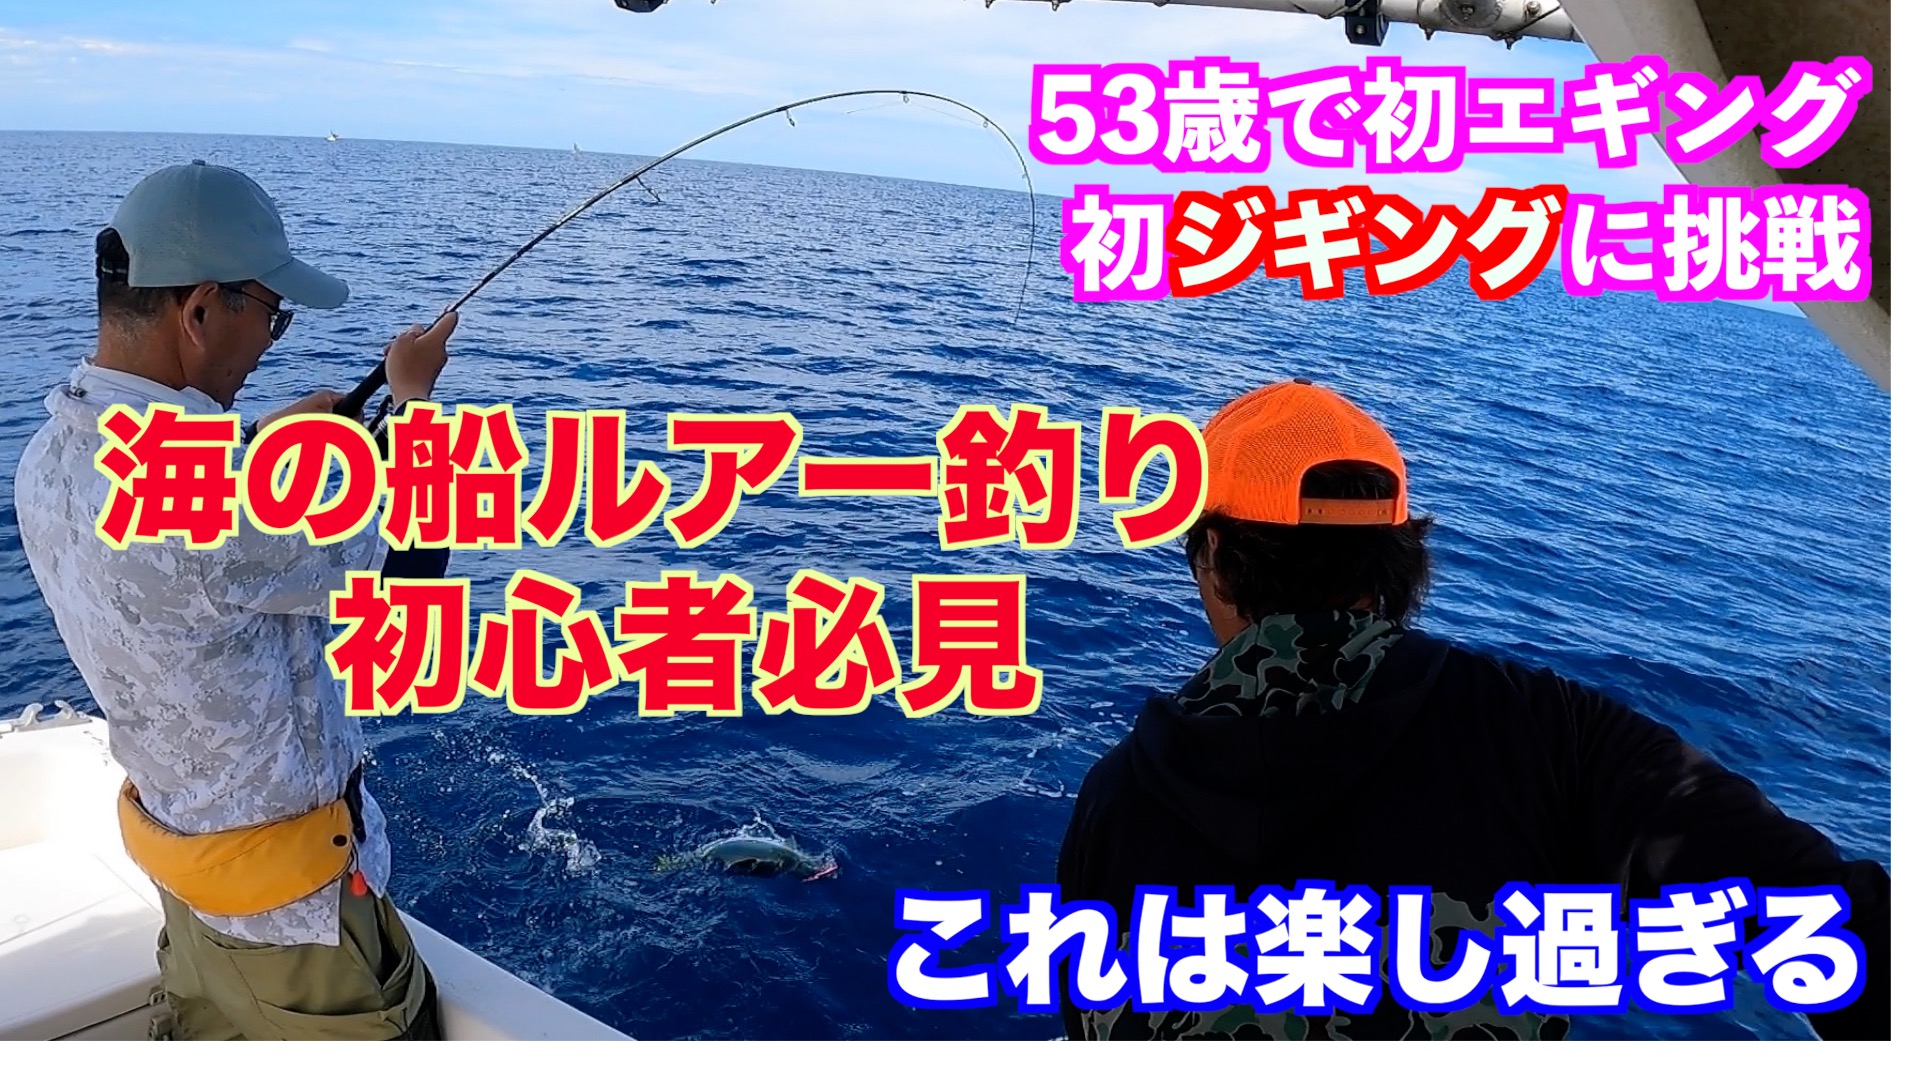 動画を公開 海の船ルアー釣り初心者必見 53歳で初ジギングをやってみた これは楽し過ぎる 杉戸繁伸船長blog 琵琶湖バスフィッシングガイド